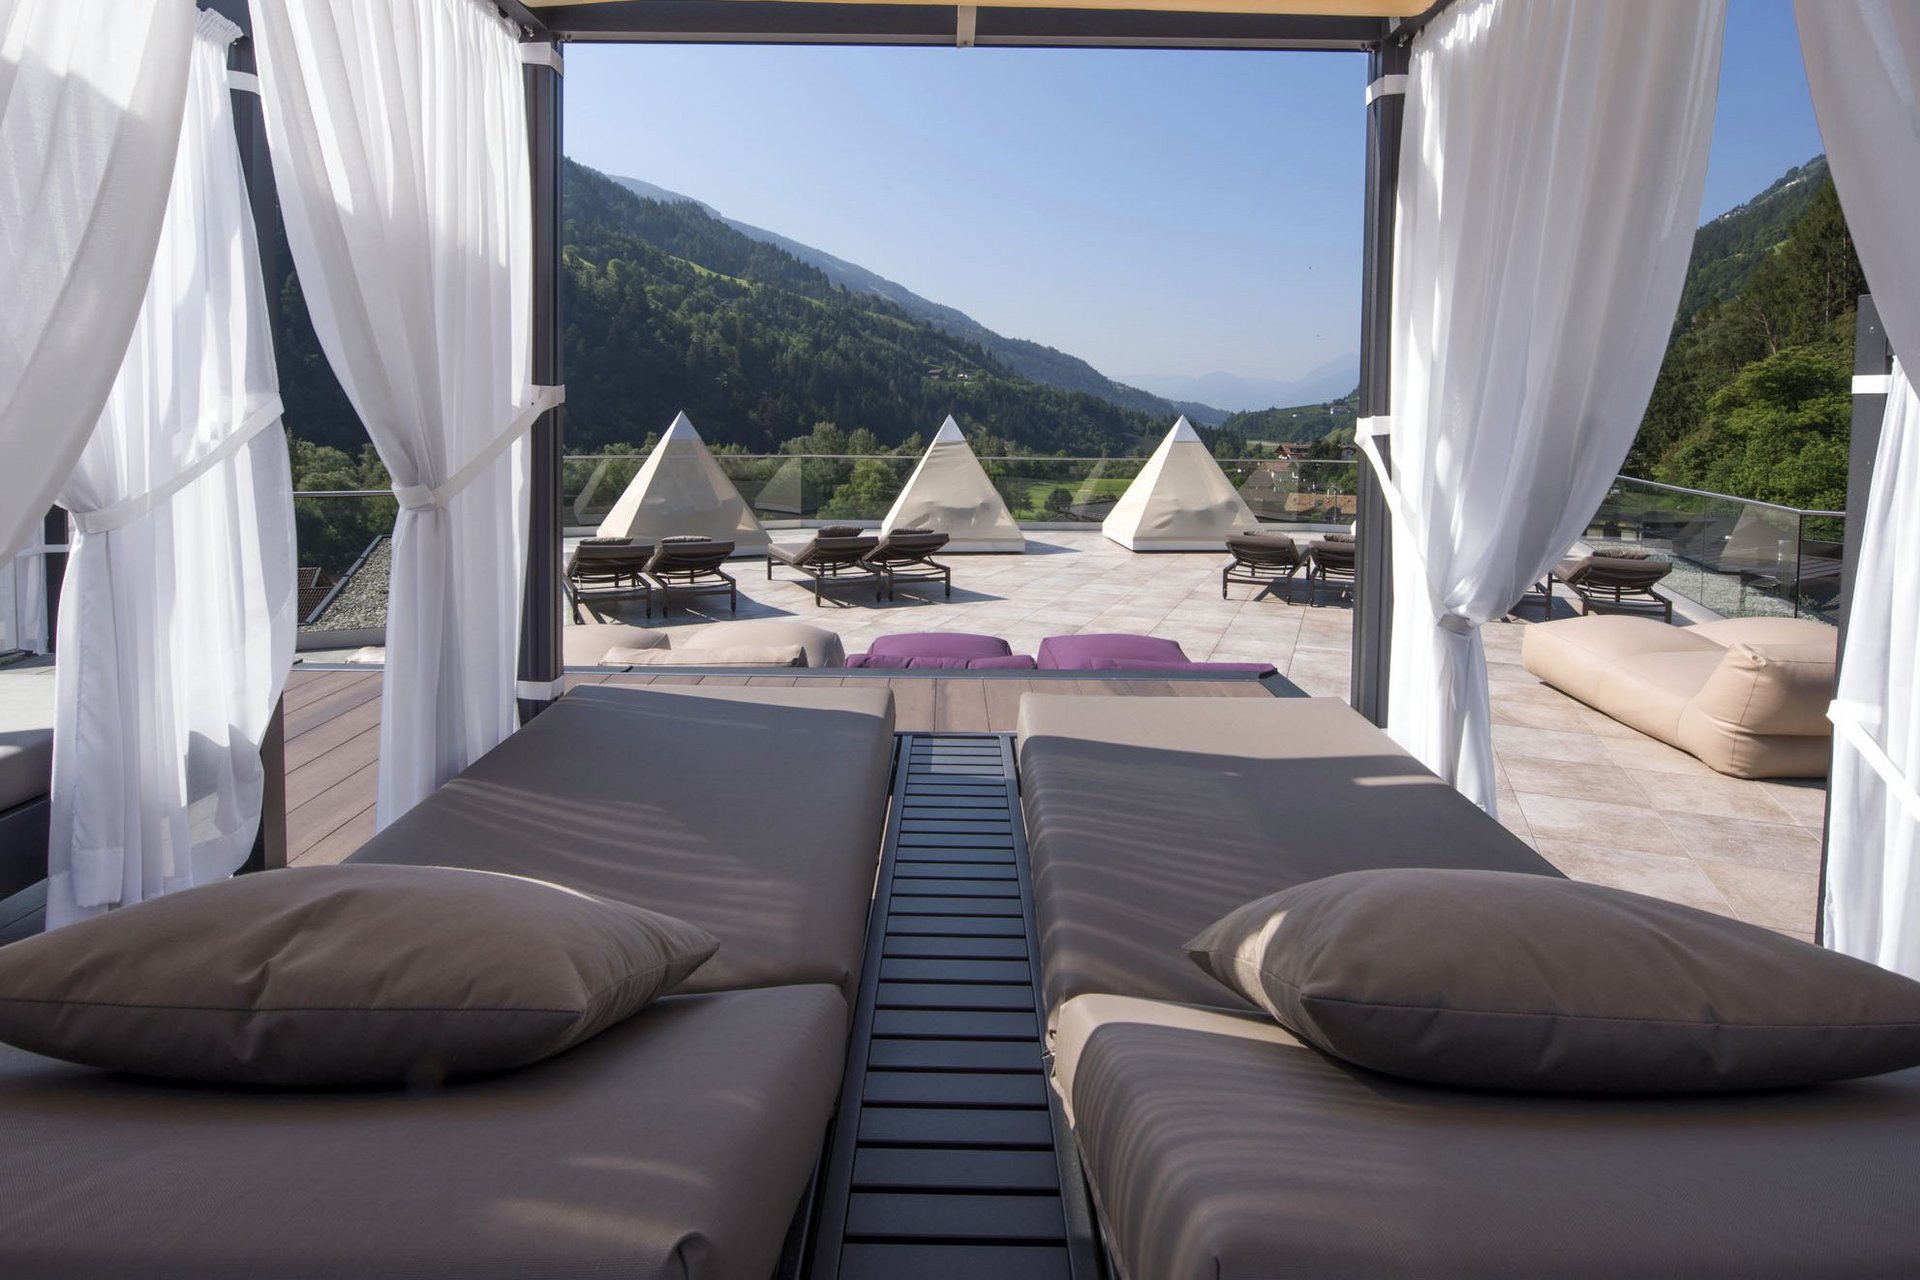 Staccate la spina: siete nel nostro hotel wellness in Alto Adige!